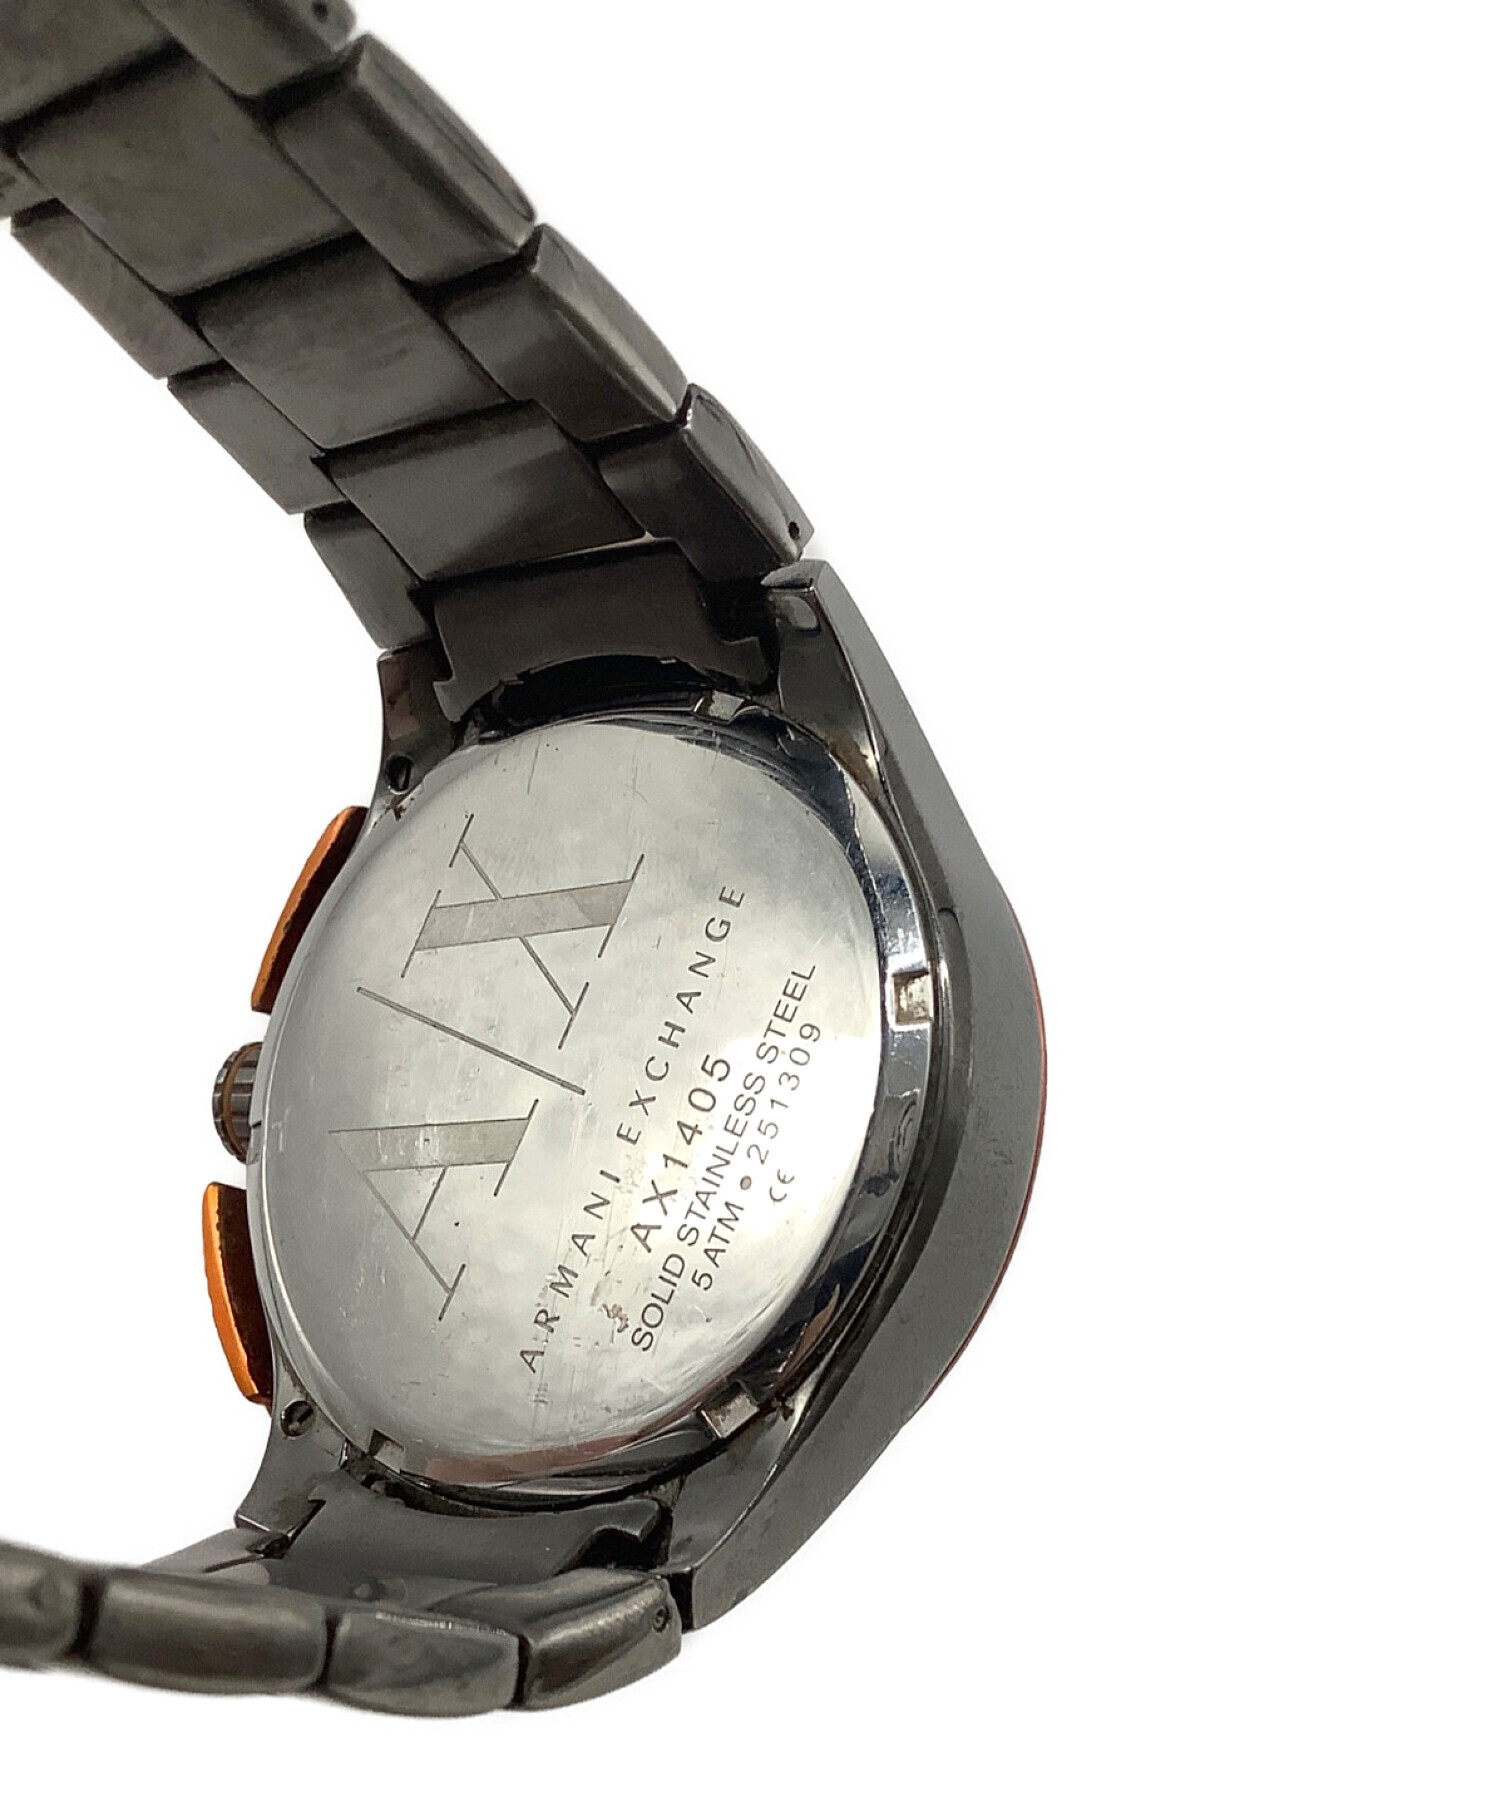 ARMANI EXCHANGE (アルマーニ エクスチェンジ) 腕時計